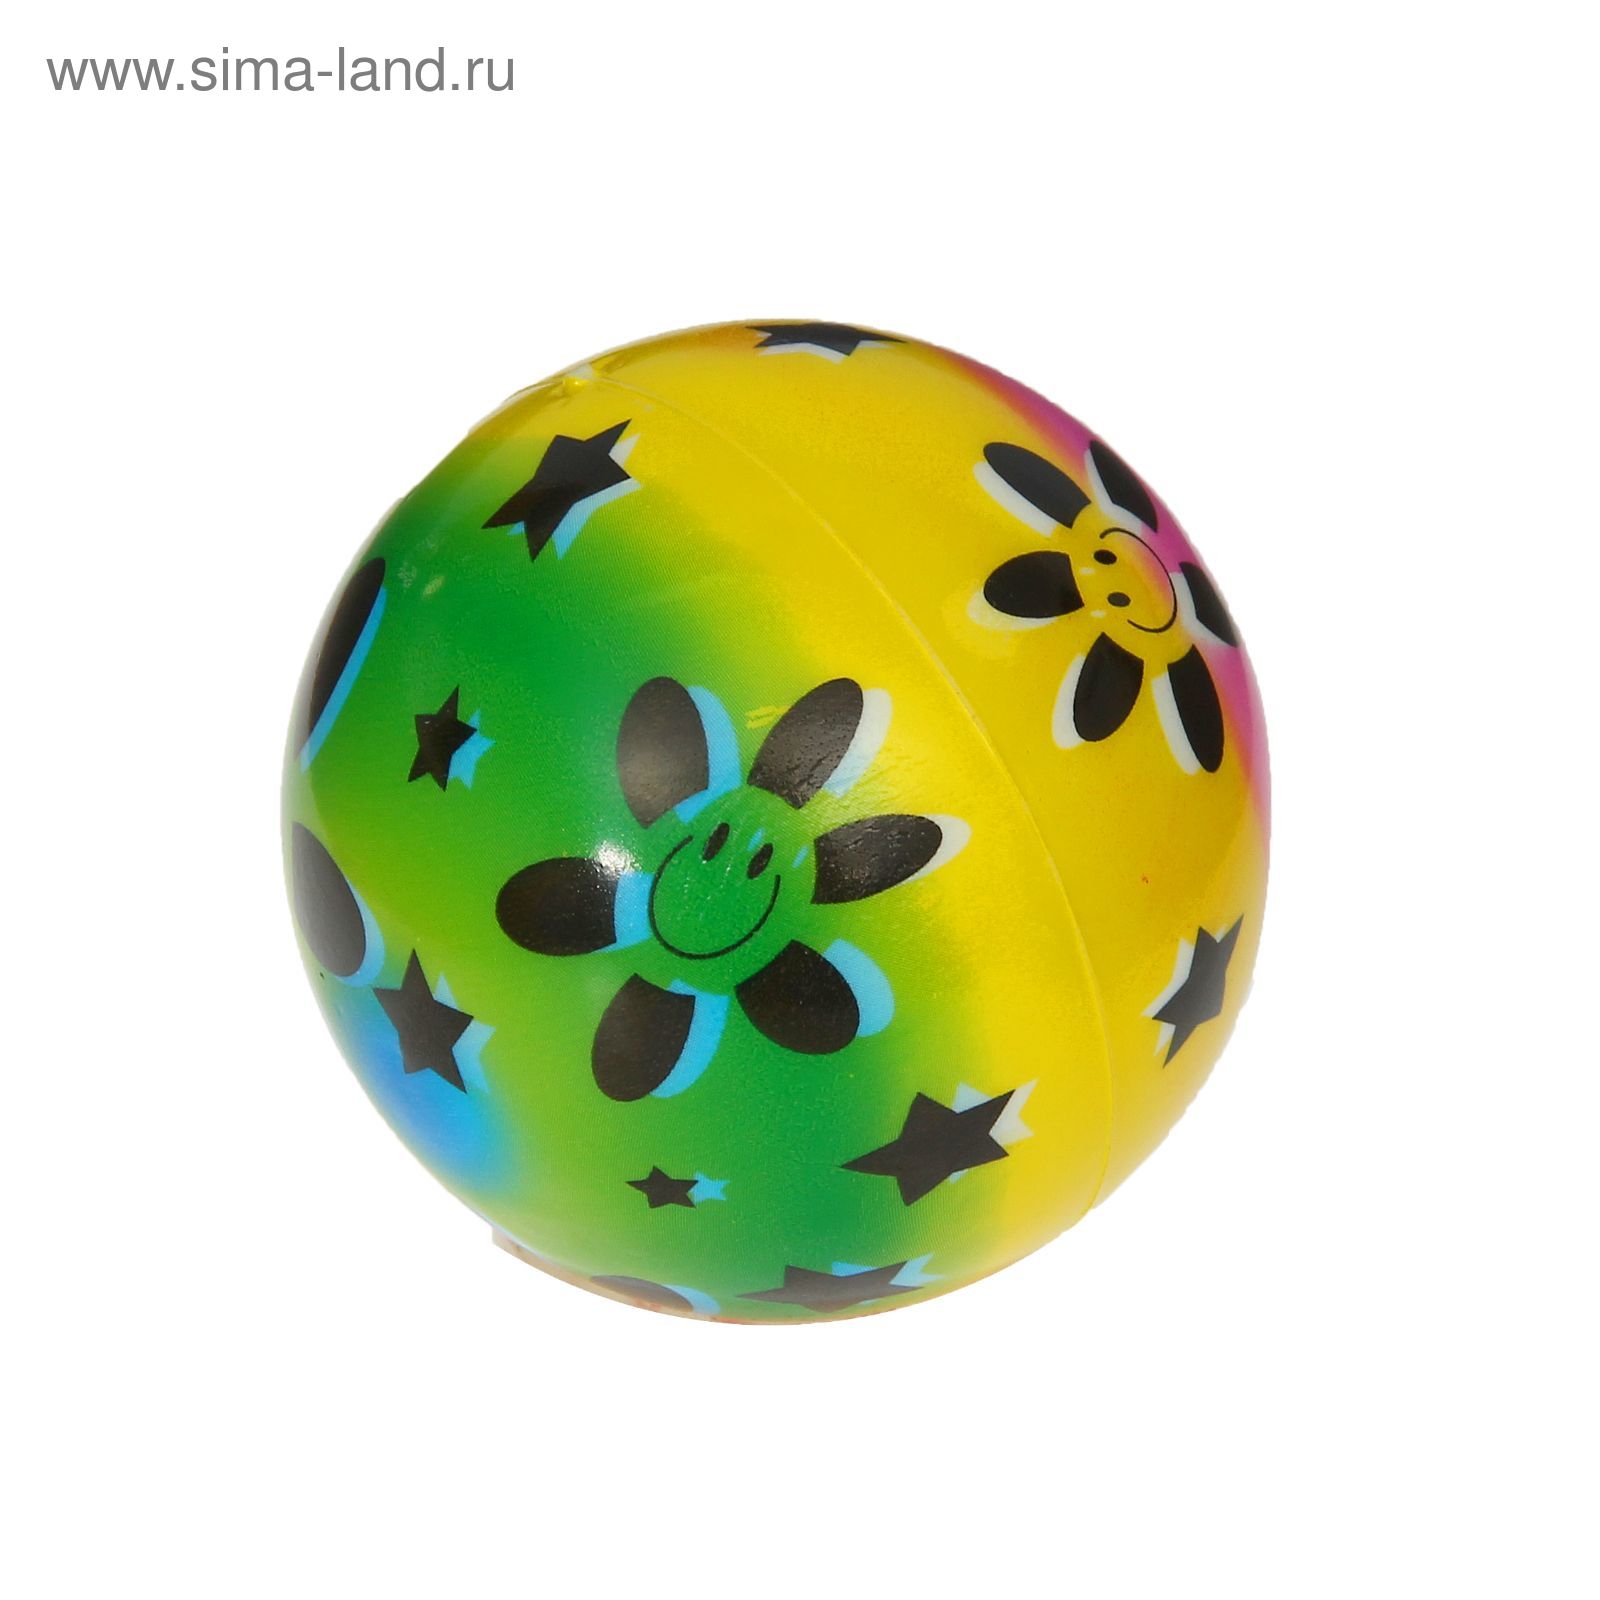 Мягкий мяч "Смайлик", 7,5 см